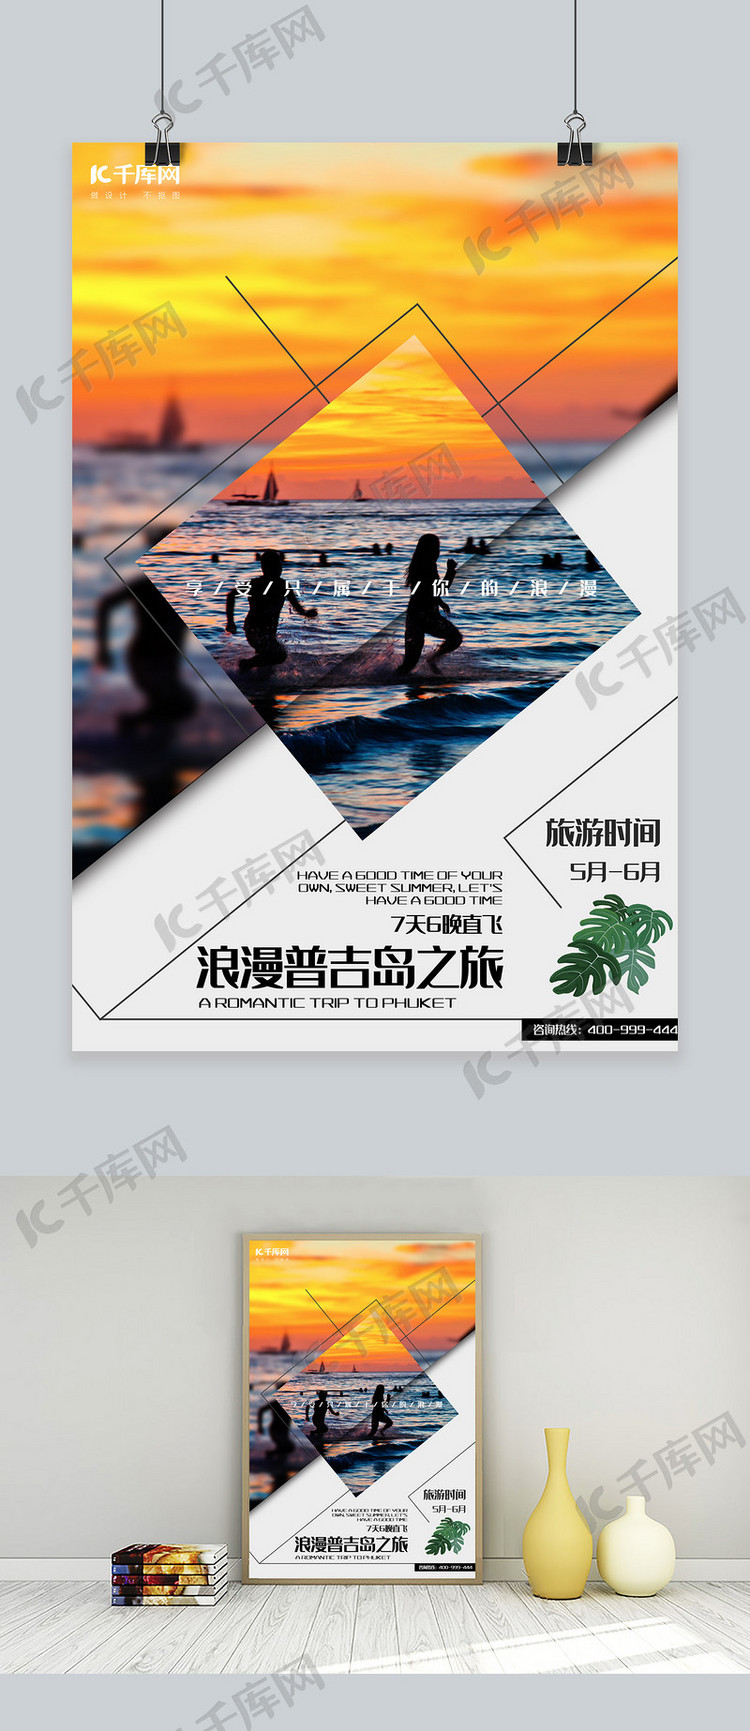 五一黄金周普吉岛夏季旅游海边旅游宣传海报